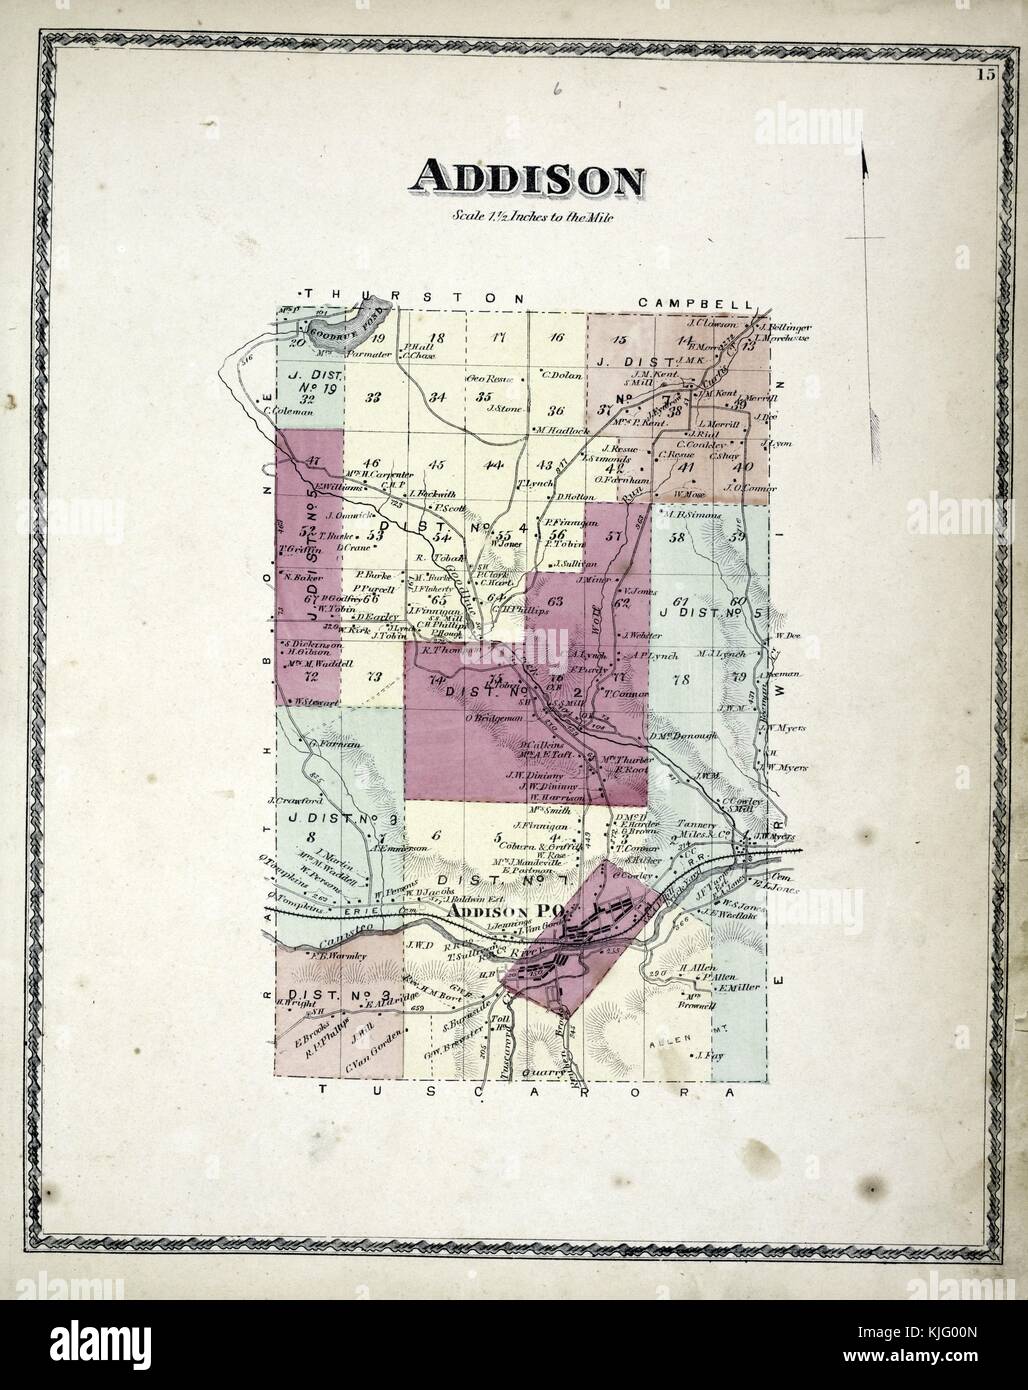 Image cartographique gravée d'un atlas, avec légende originale indiquant 'Addison Township', 1873. De la Bibliothèque publique de New York. Banque D'Images